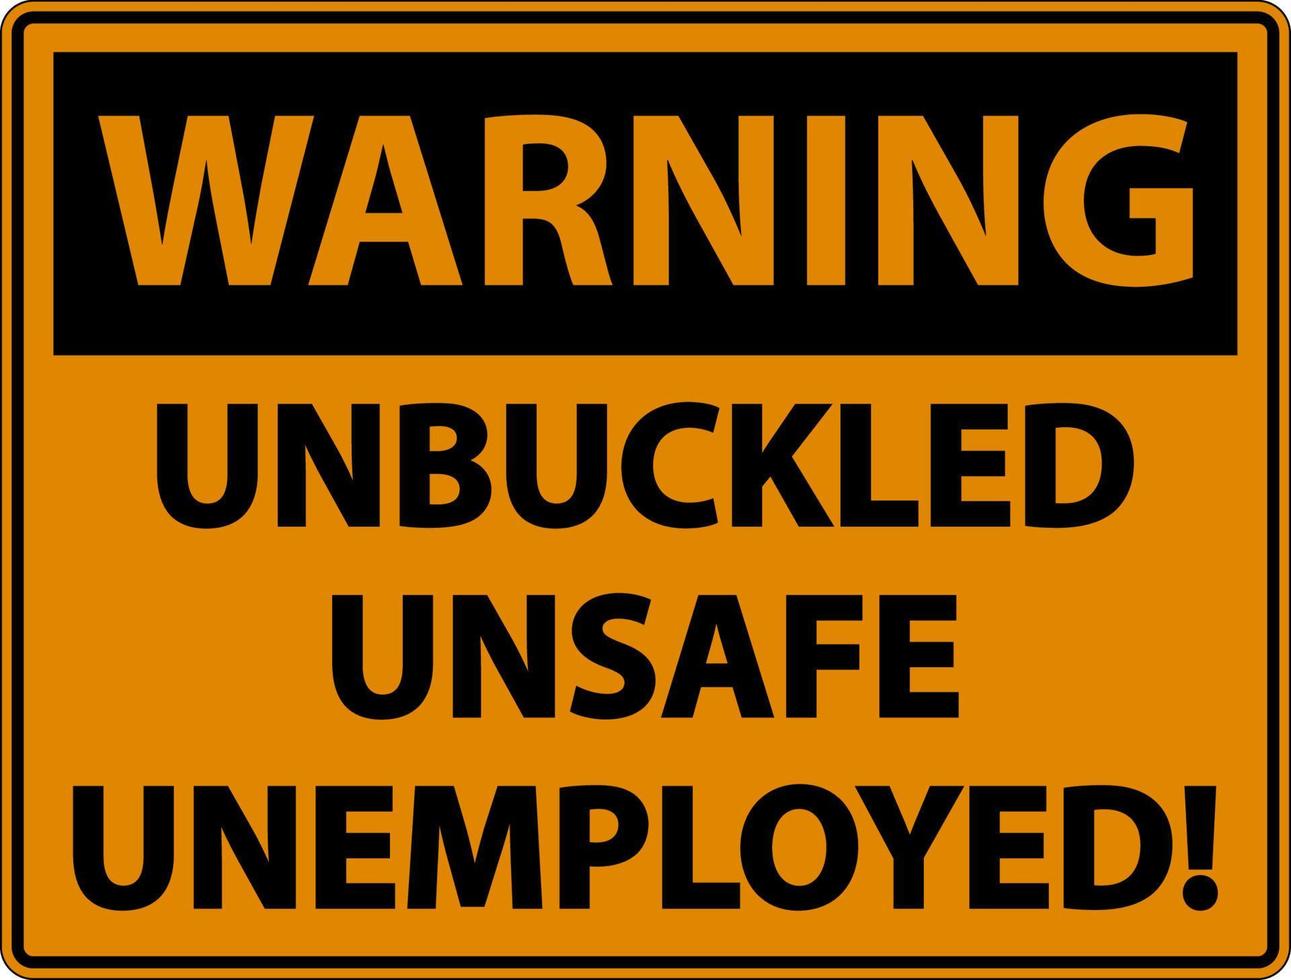 avvertimento sganciato segno disoccupato pericoloso su sfondo bianco vettore